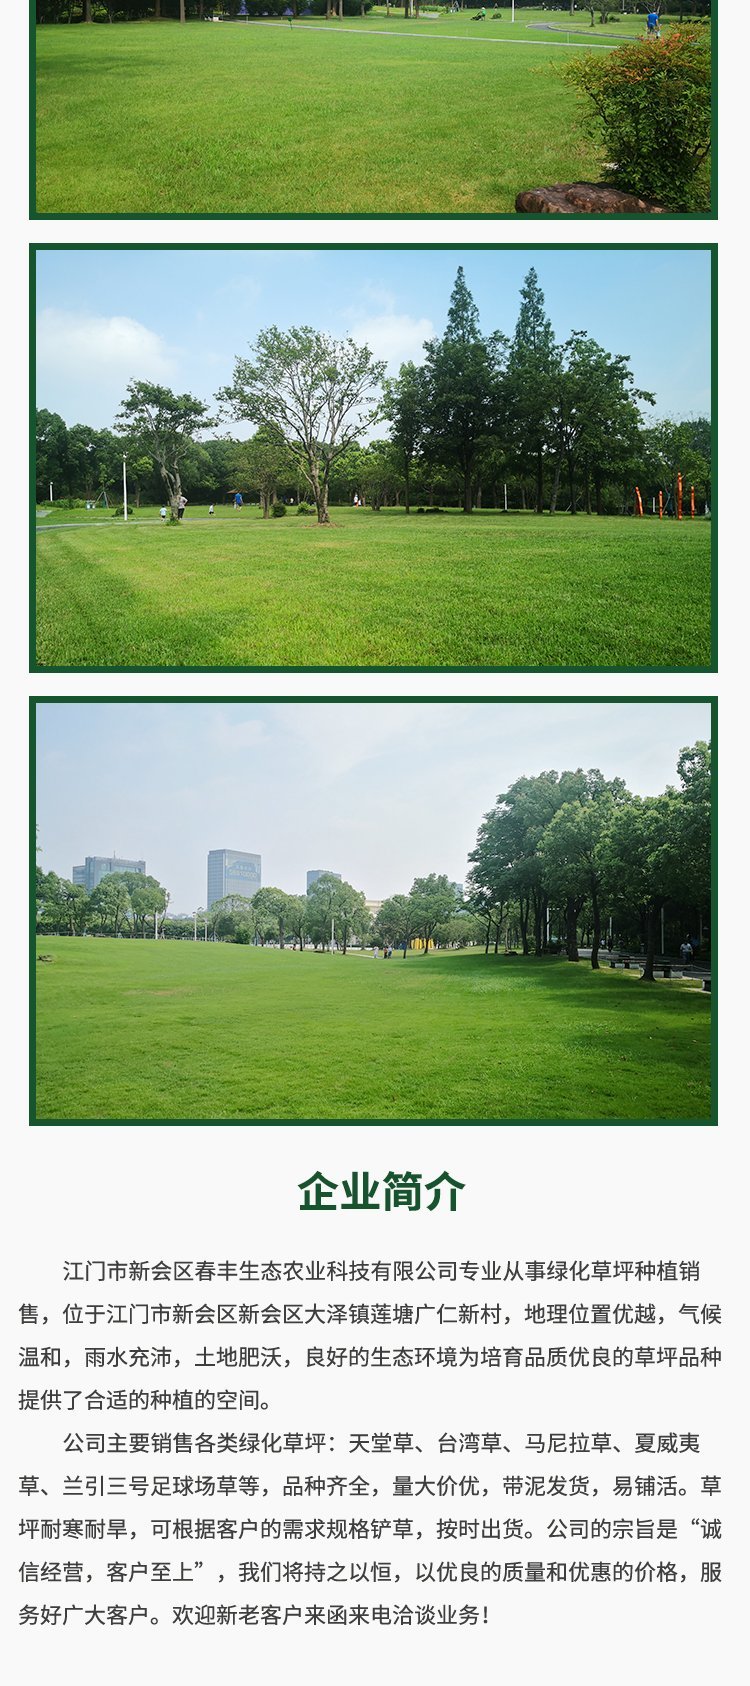 绿化天堂草坪